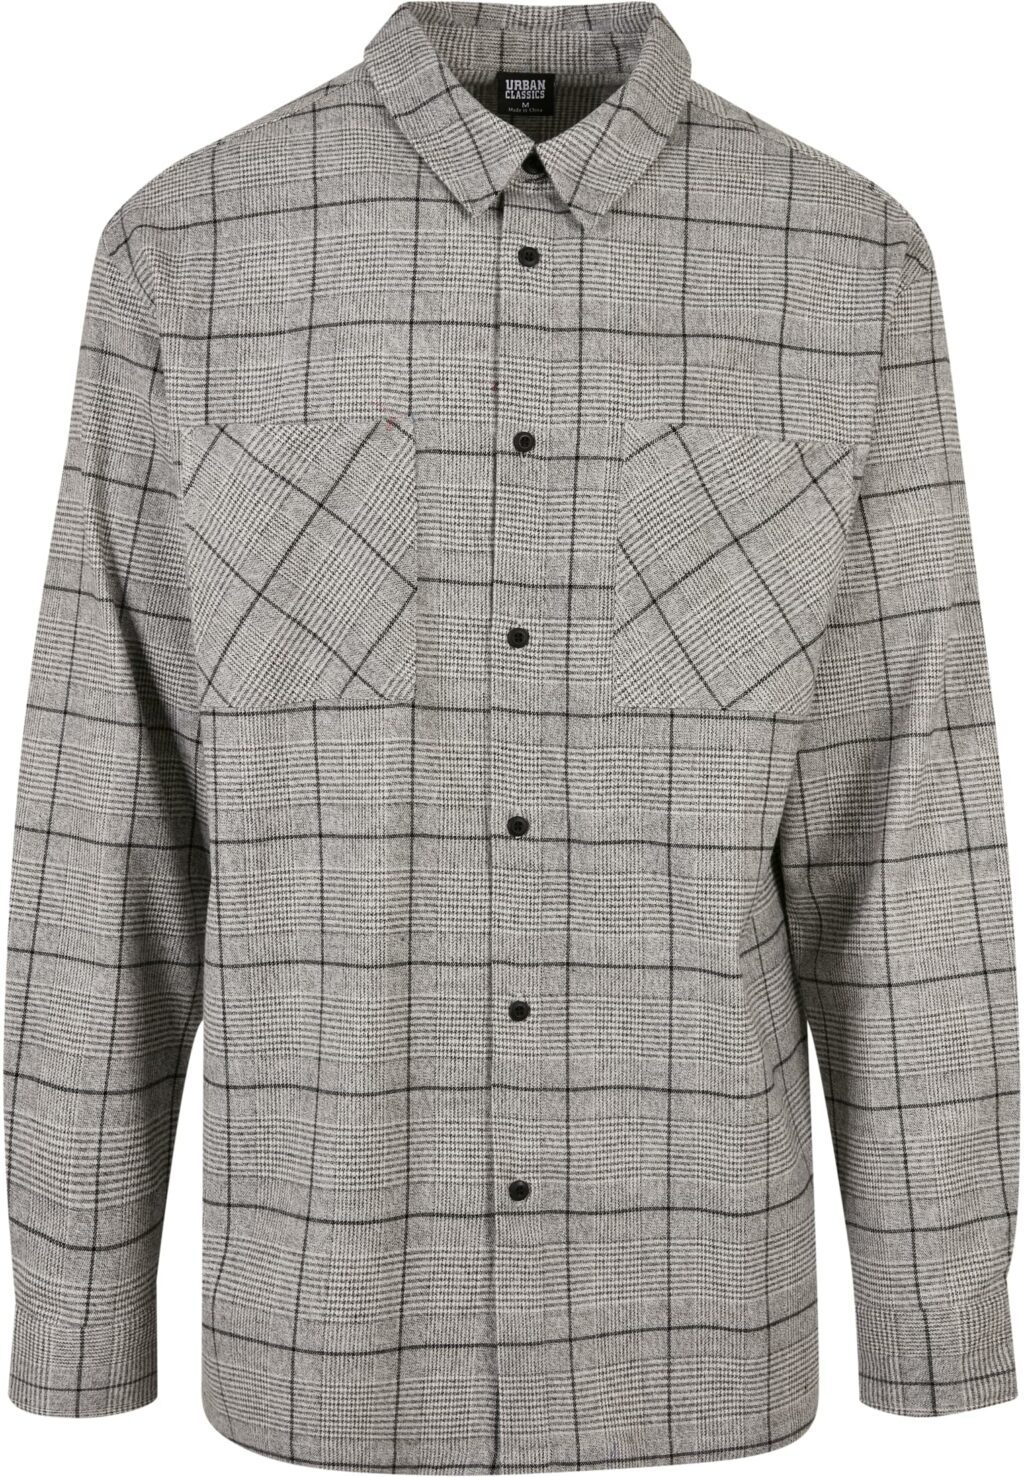 Urban Classics Long Oversized Checked Greyish Shirt grey/black TB5594